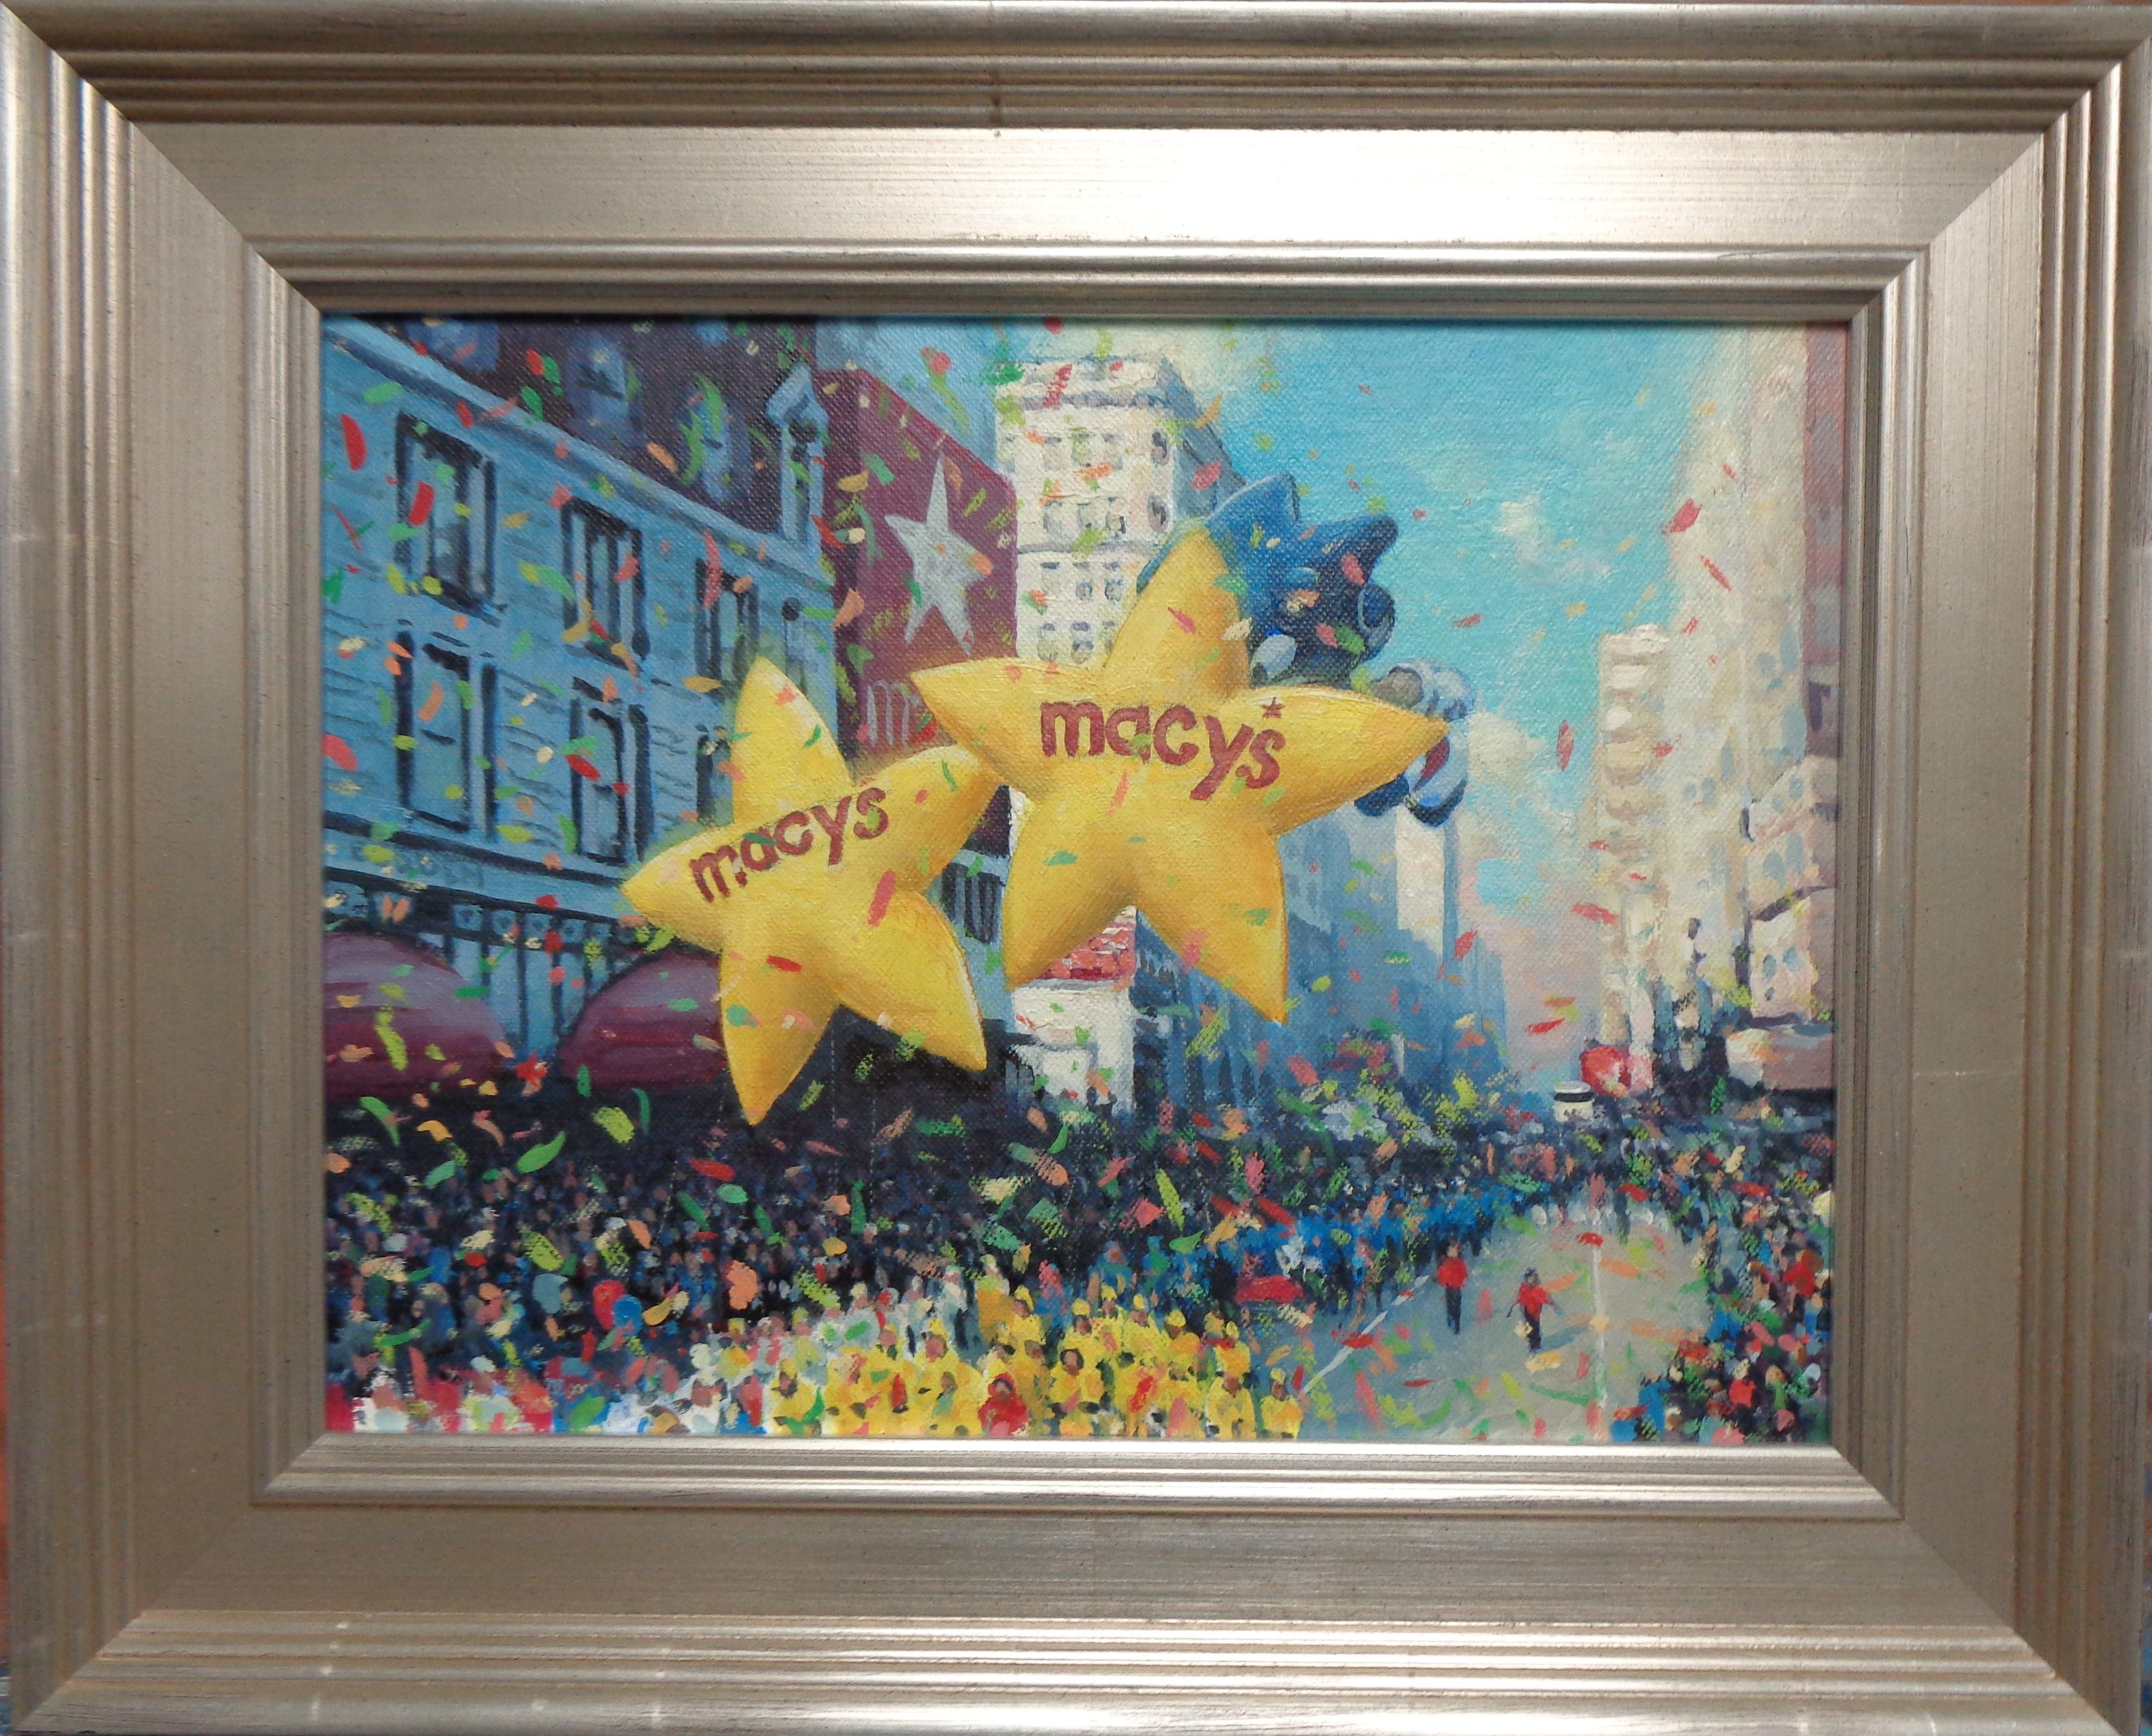 Macy's Star & Sonic II
Teil einer Serie von 11 Gemälden.
Ein Ölgemälde auf Leinwand von dem preisgekrönten zeitgenössischen Künstler Michael Budden, das Bilder von der Macy's Thanksgiving Parade in New York City zeigt. Das Bild misst ungerahmt 9 x